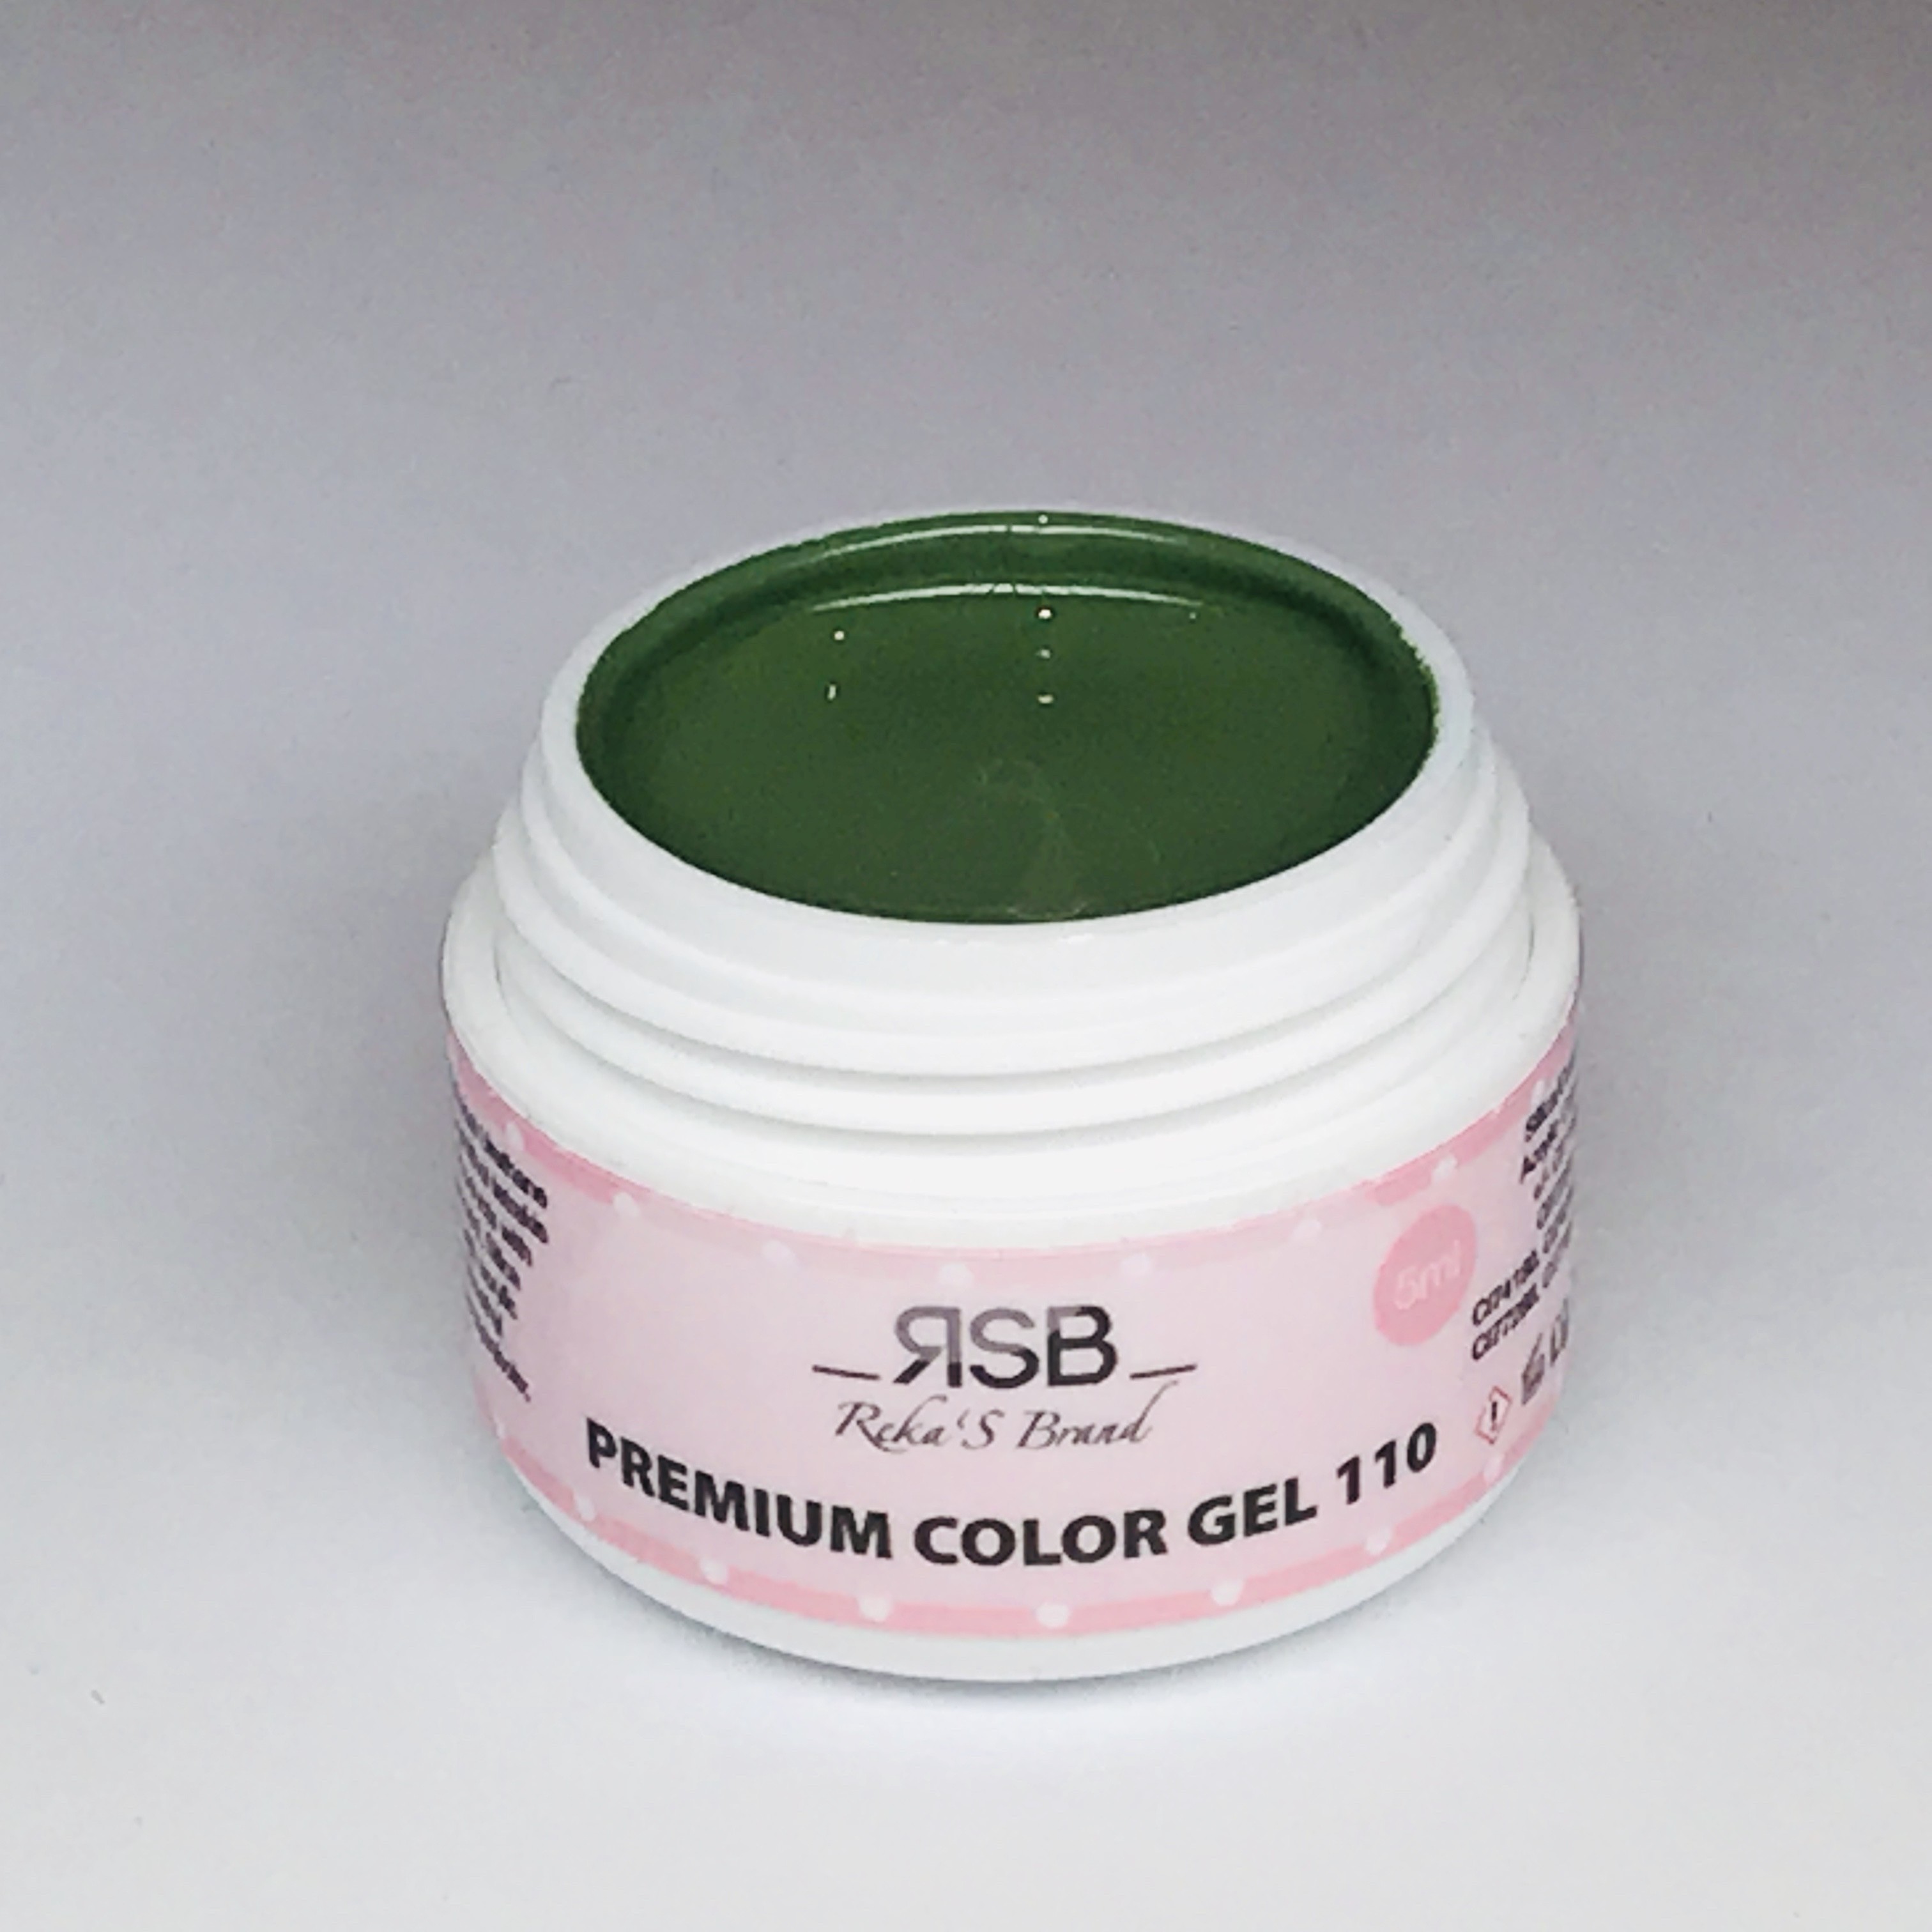 Premium Color Gel 110